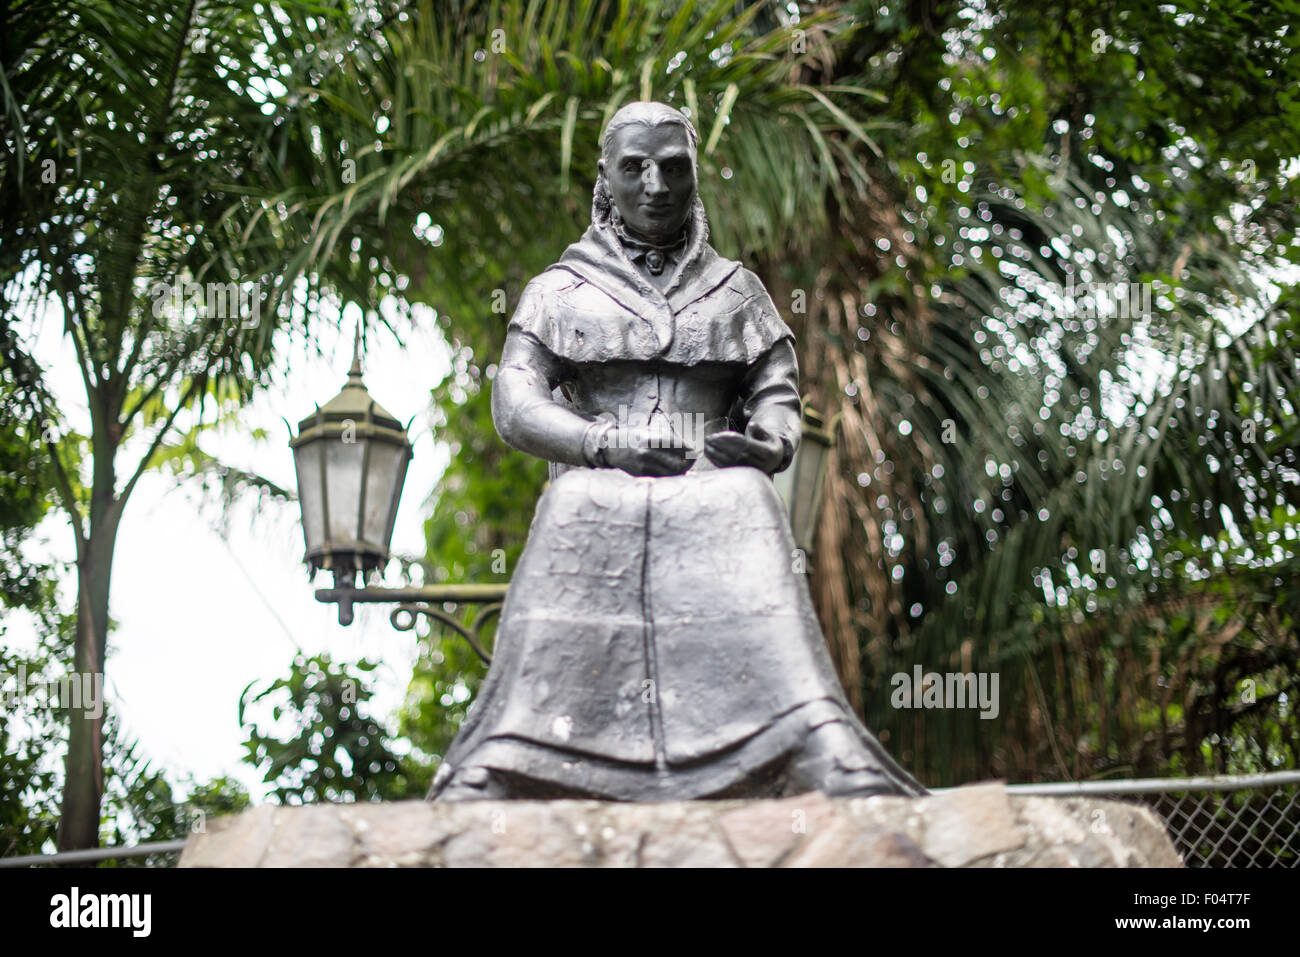 PANAMA CITY, Panama--eine Statue von Amelia Denis de Icaza (1836 – 1911), panamaischer romantische Dichter und die erste veröffentlichte panamaische Frau, ihre Gedichte zu veröffentlichen. Die Statue sitzt auf Ancon Hügel mit Blick auf Panama-Stadt. Ancon Hill ist nur 654-Füße hoch aber befiehlt eine beeindruckende Aussicht über die alte und neue Abschnitte von Panama City. Mit Blick auf den Pazifischen Ozean und der Eingang zu den Panama-Kanal die Gegend war historisch gesehen, wo die Verwaltung des Panama-Kanals wurde zentriert und hat jetzt eine Mischung aus High-End-Residences und Ministerien. Stockfoto